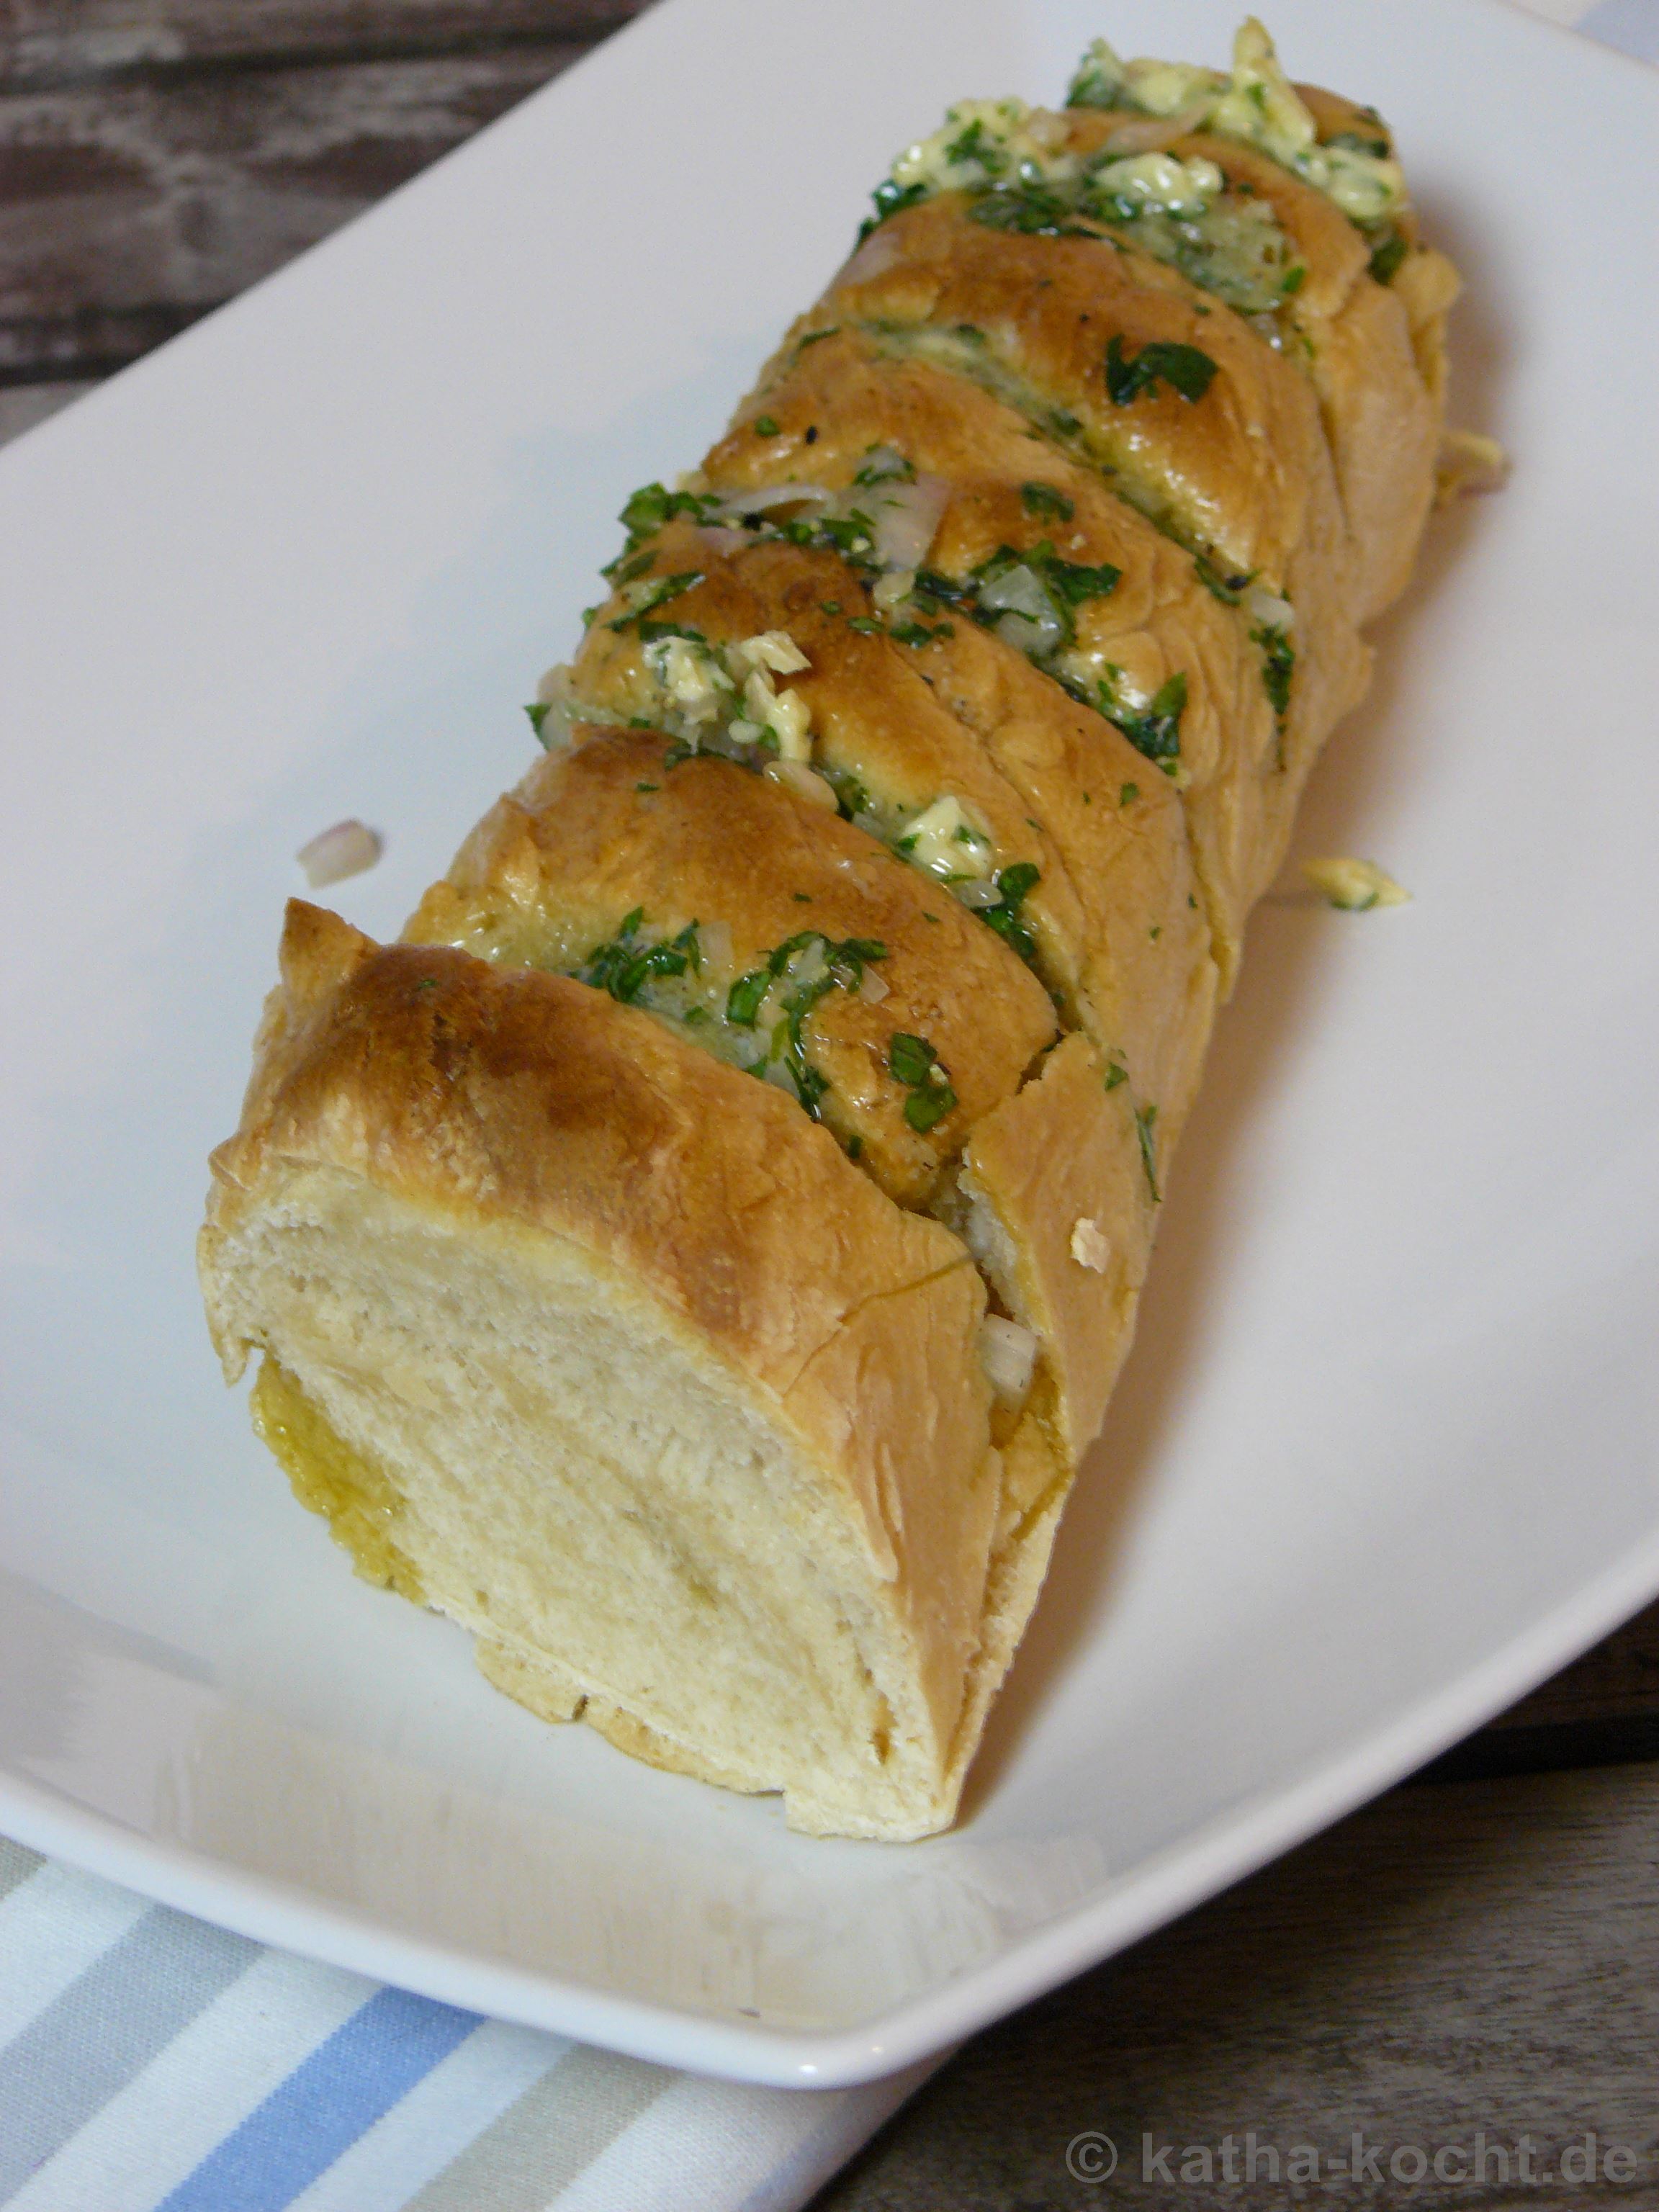 Brot mit Kräuterbutter - Katha-kocht!